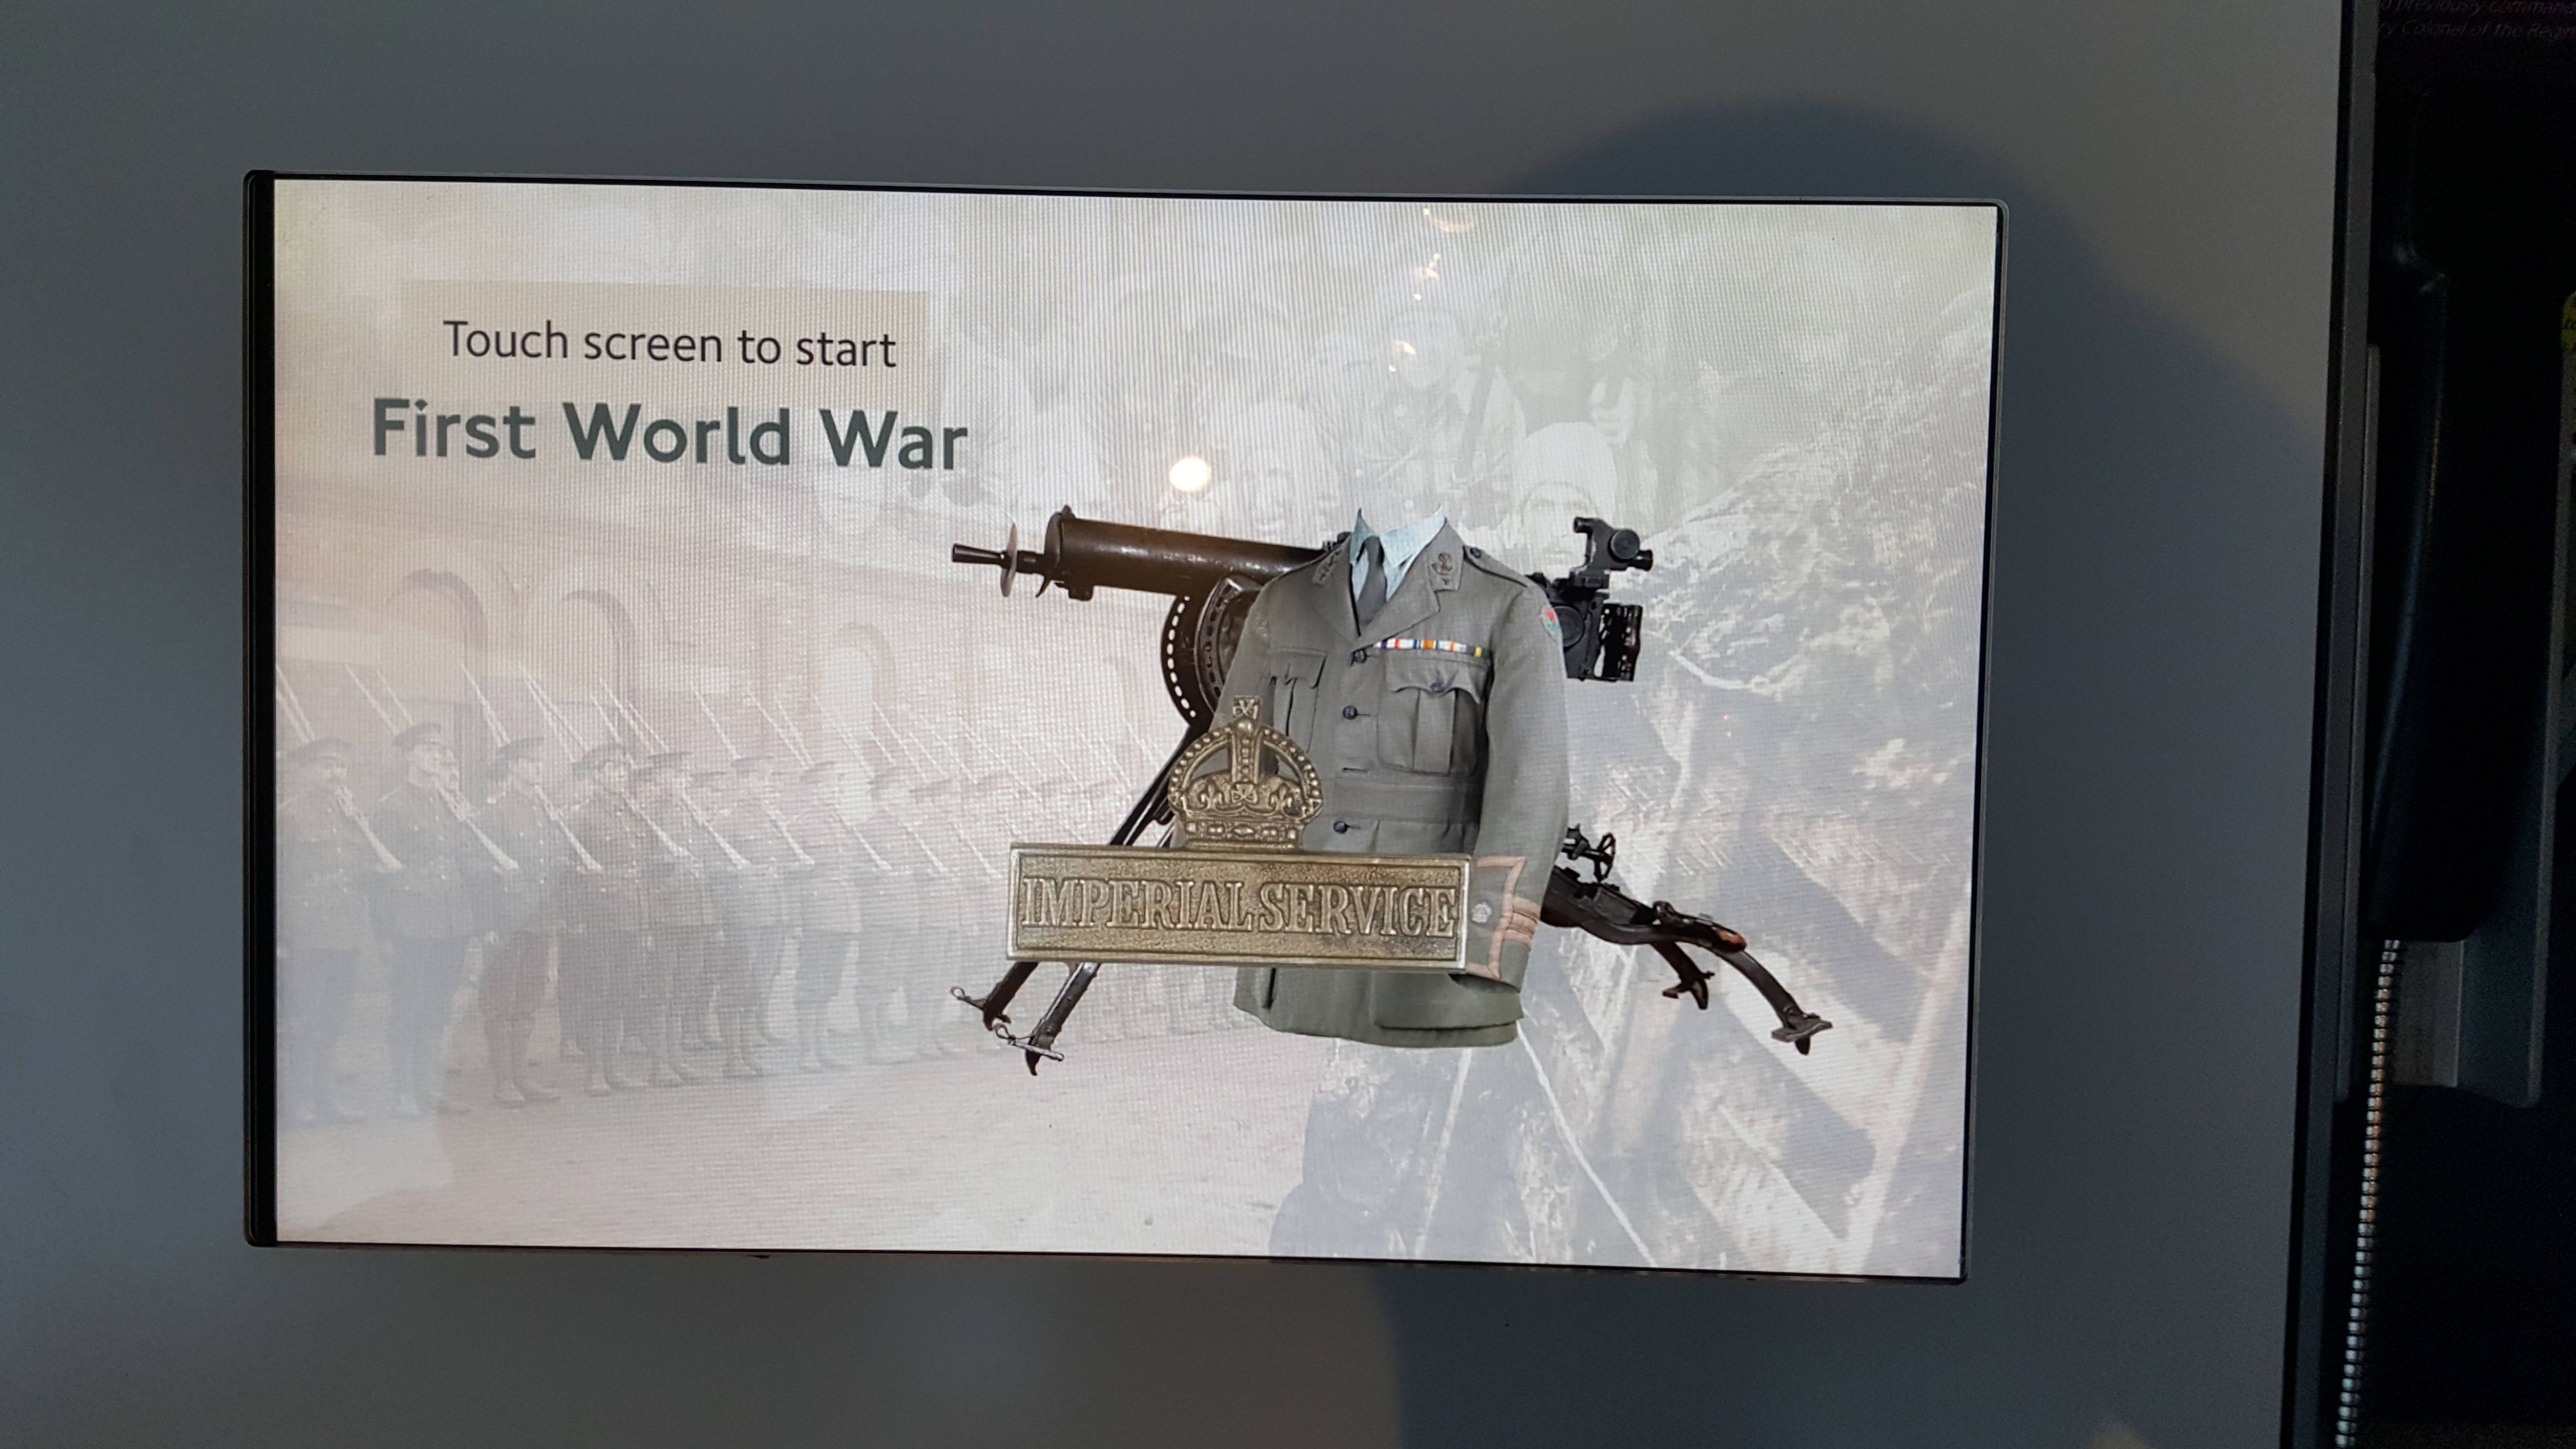 Touch screen to start First World War